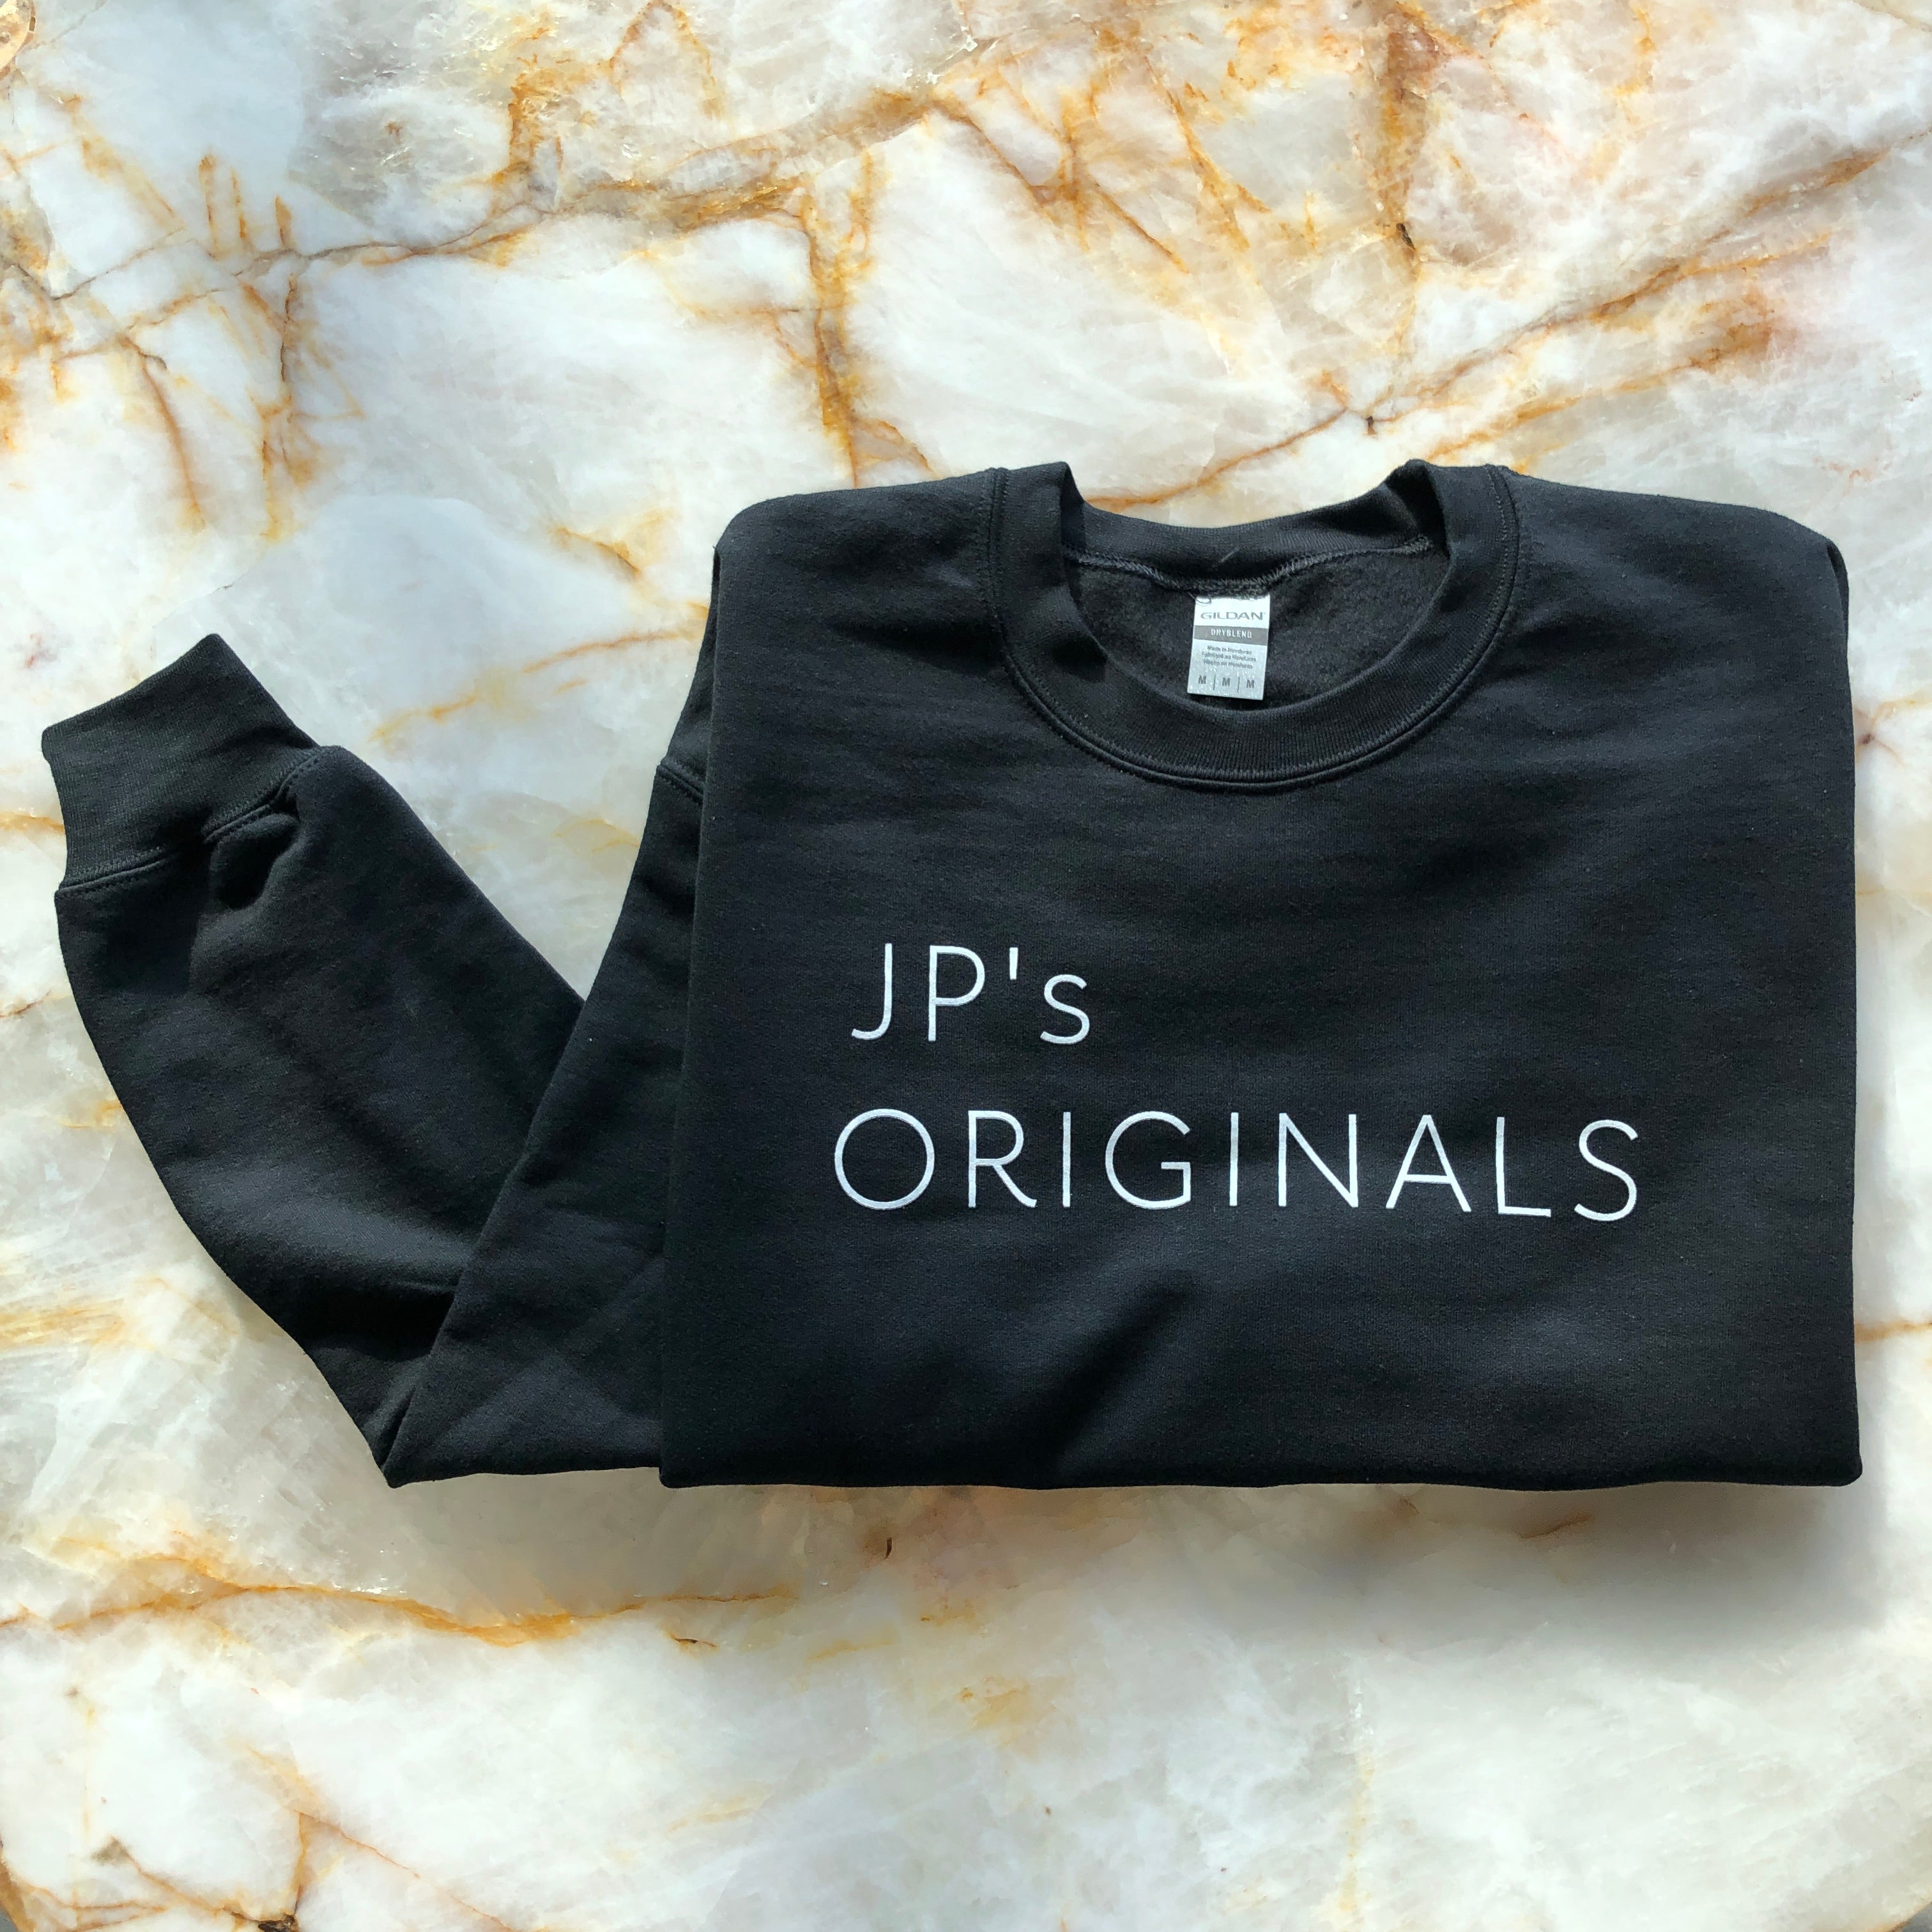 JP's Originals Sweatshirt